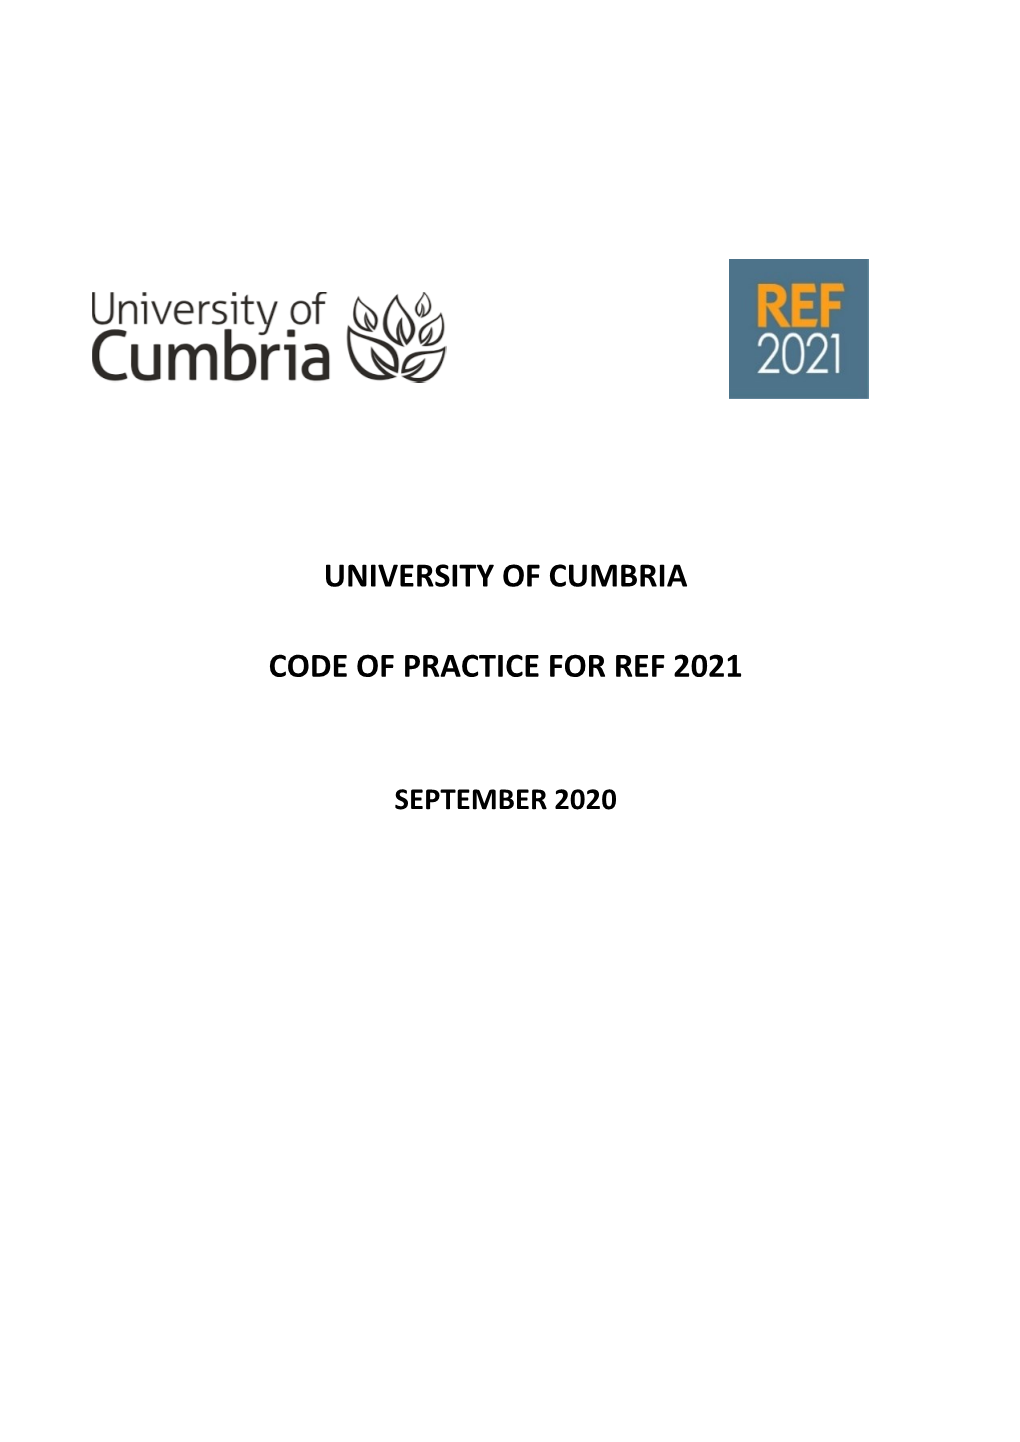 University of Cumbria Code of Practice for Ref 2021